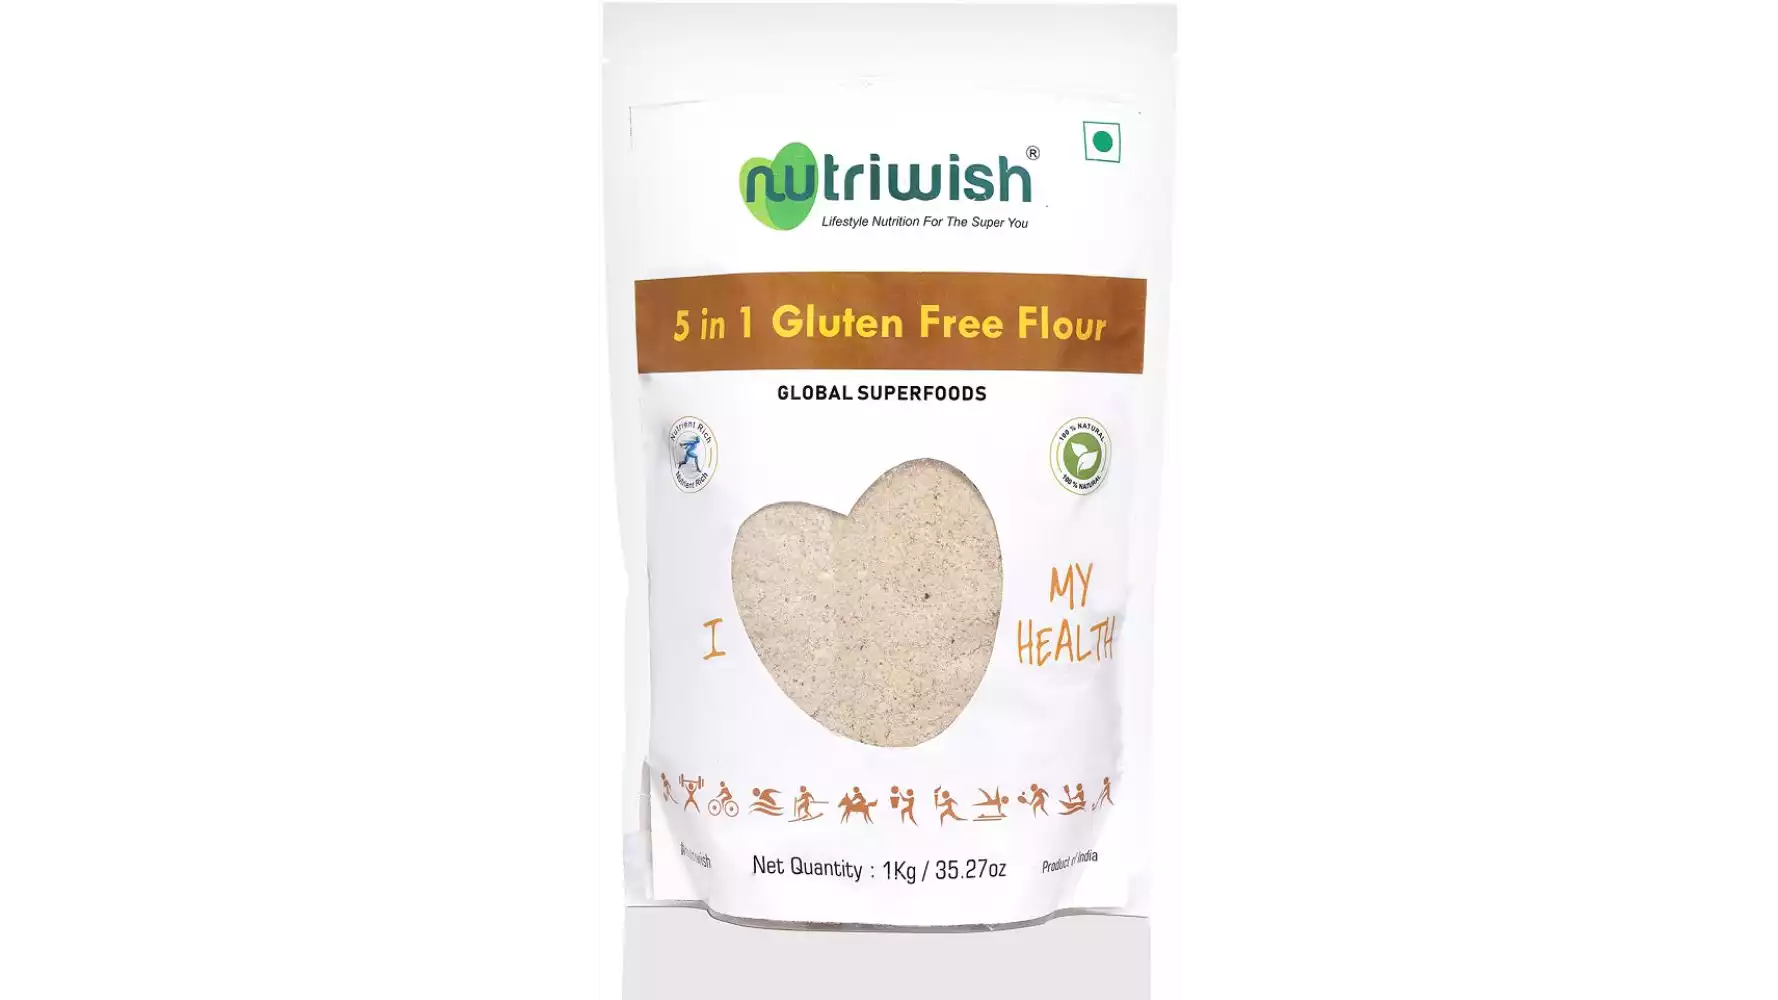 Nutriwish Gluten Free Flour 5 In 1 (1kg)